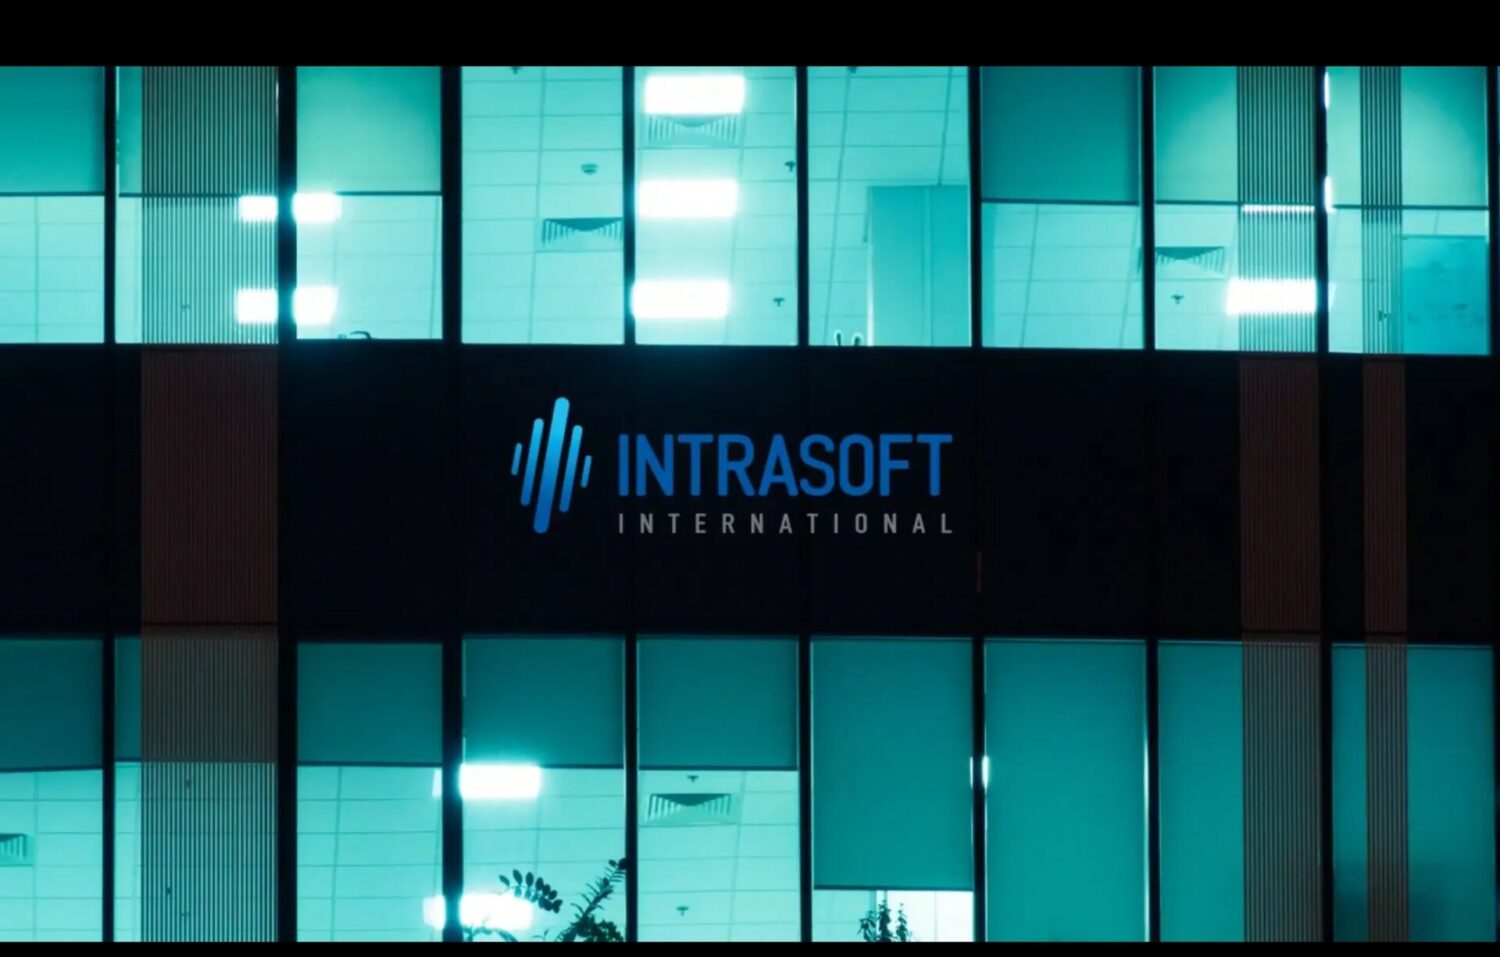 Ολοκληρώθηκε η πώληση και μεταβίβαση των μετοχών της Intrasoft International στη Net Company Group